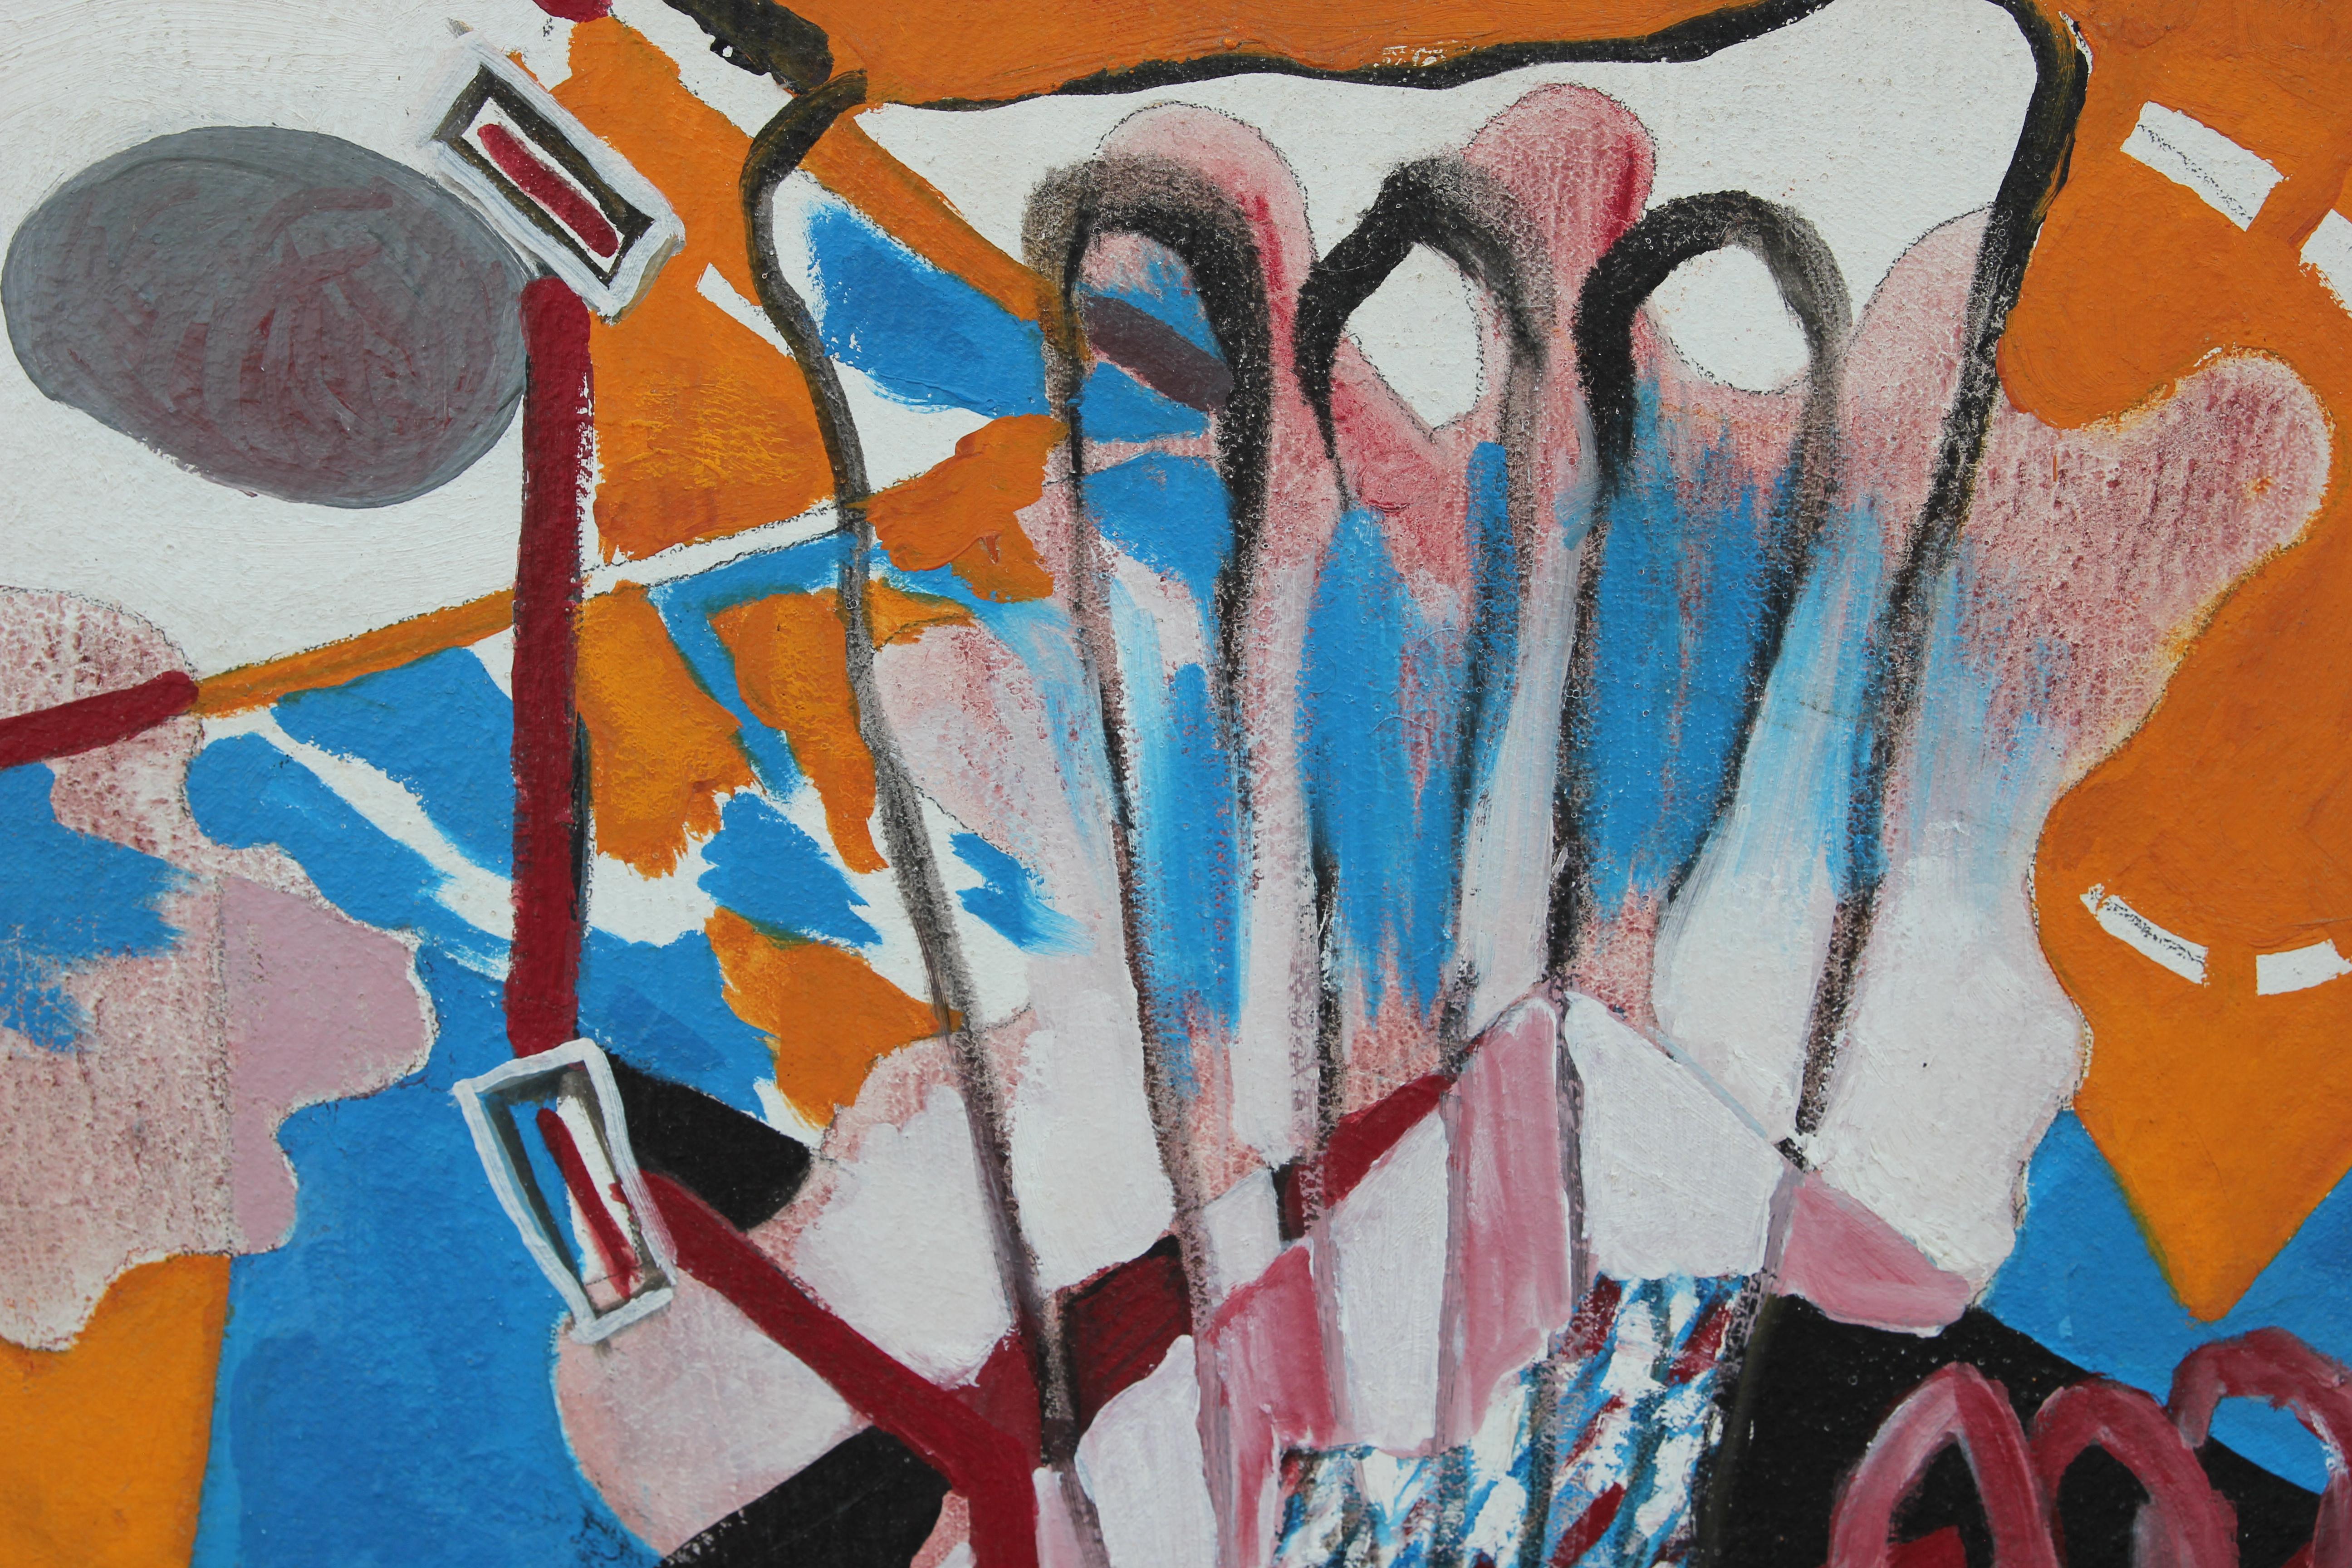 Berry Bowen abstrakte blaue und orange Malerei auf Leinwand. Das Werk ist auf der Rückseite der Leinwand vom Künstler signiert, betitelt und datiert.

Biografie des Künstlers:
Berry wurde am 6. Oktober 1952 in Dallas, Texas, als Tochter von Annis